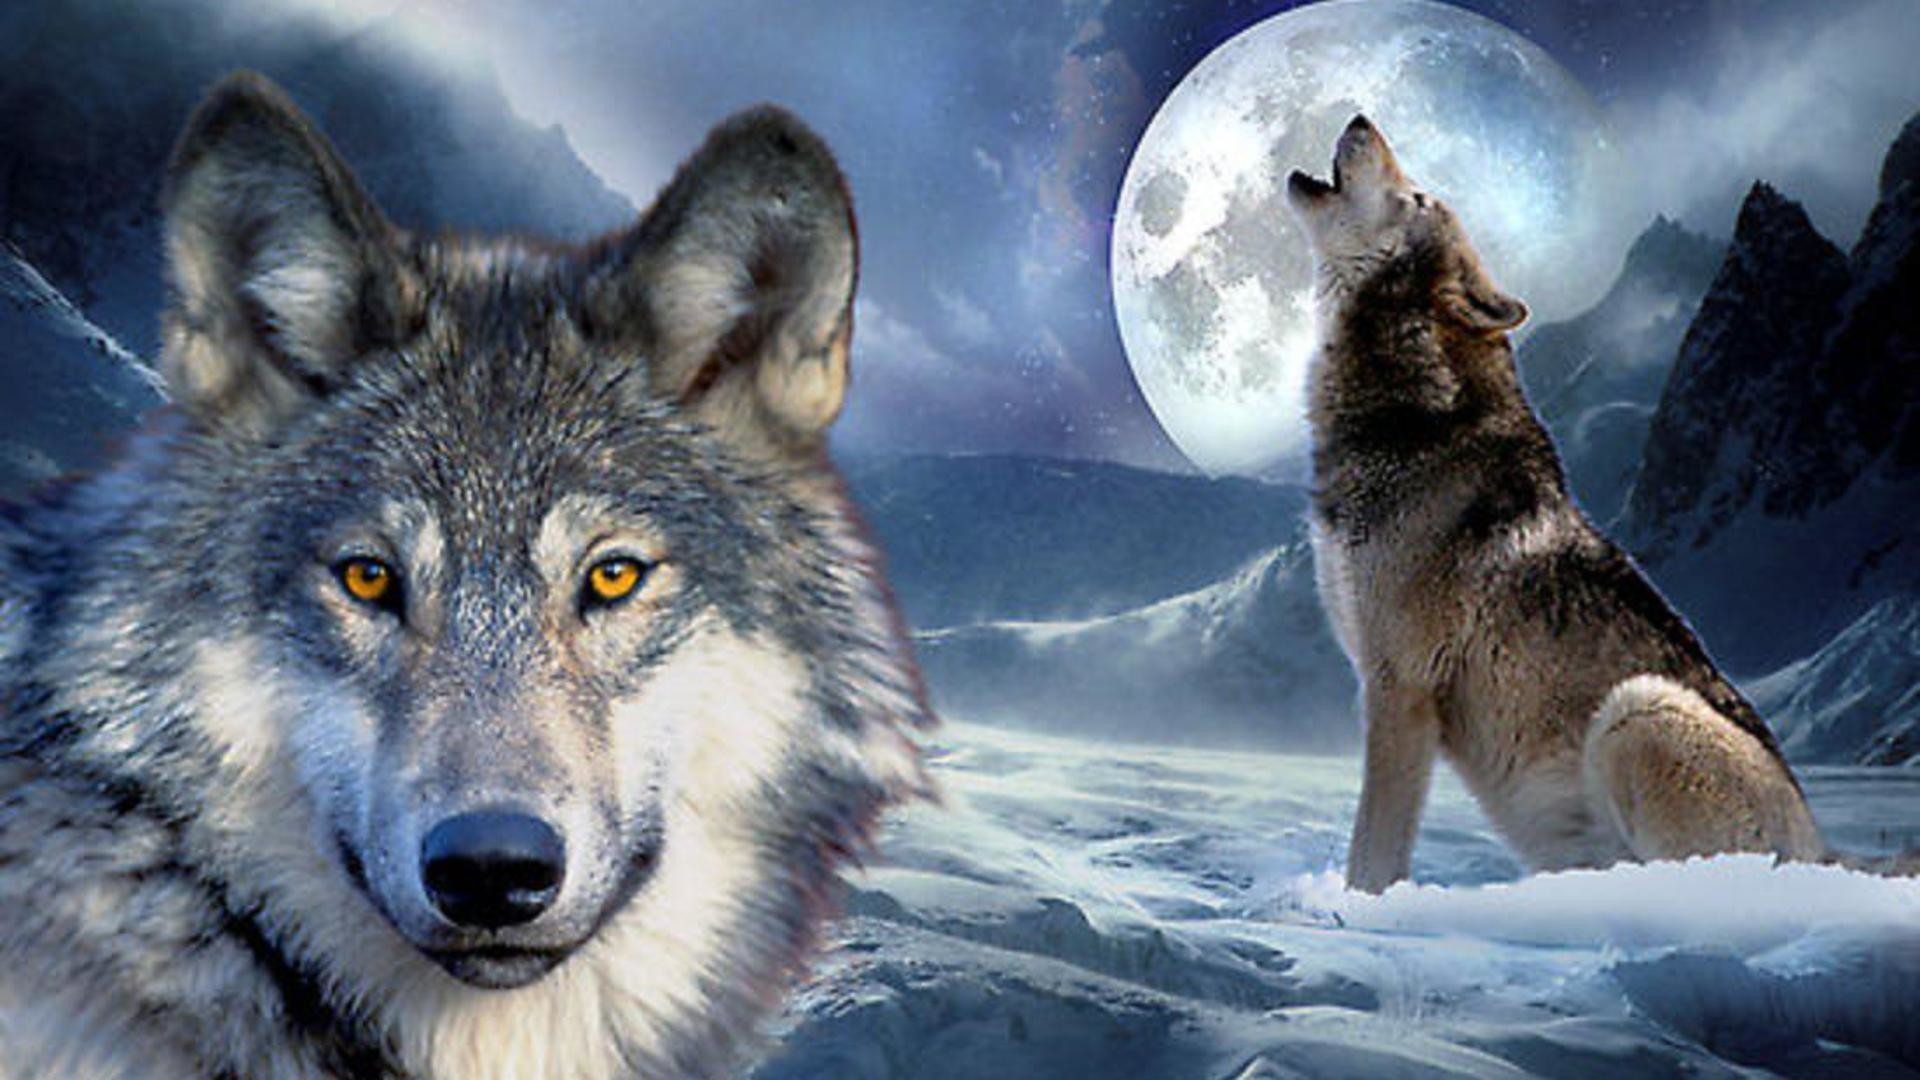 Hình nền sói: Với những ai yêu thích loài động vật này, hình nền sói sẽ khiến bạn như đang sống trong một thế giới đầy mê hoặc và tràn đầy sức mạnh. Cùng ngắm nhìn những bức ảnh chất lượng cao về chú sói xám đáng yêu này nhé!